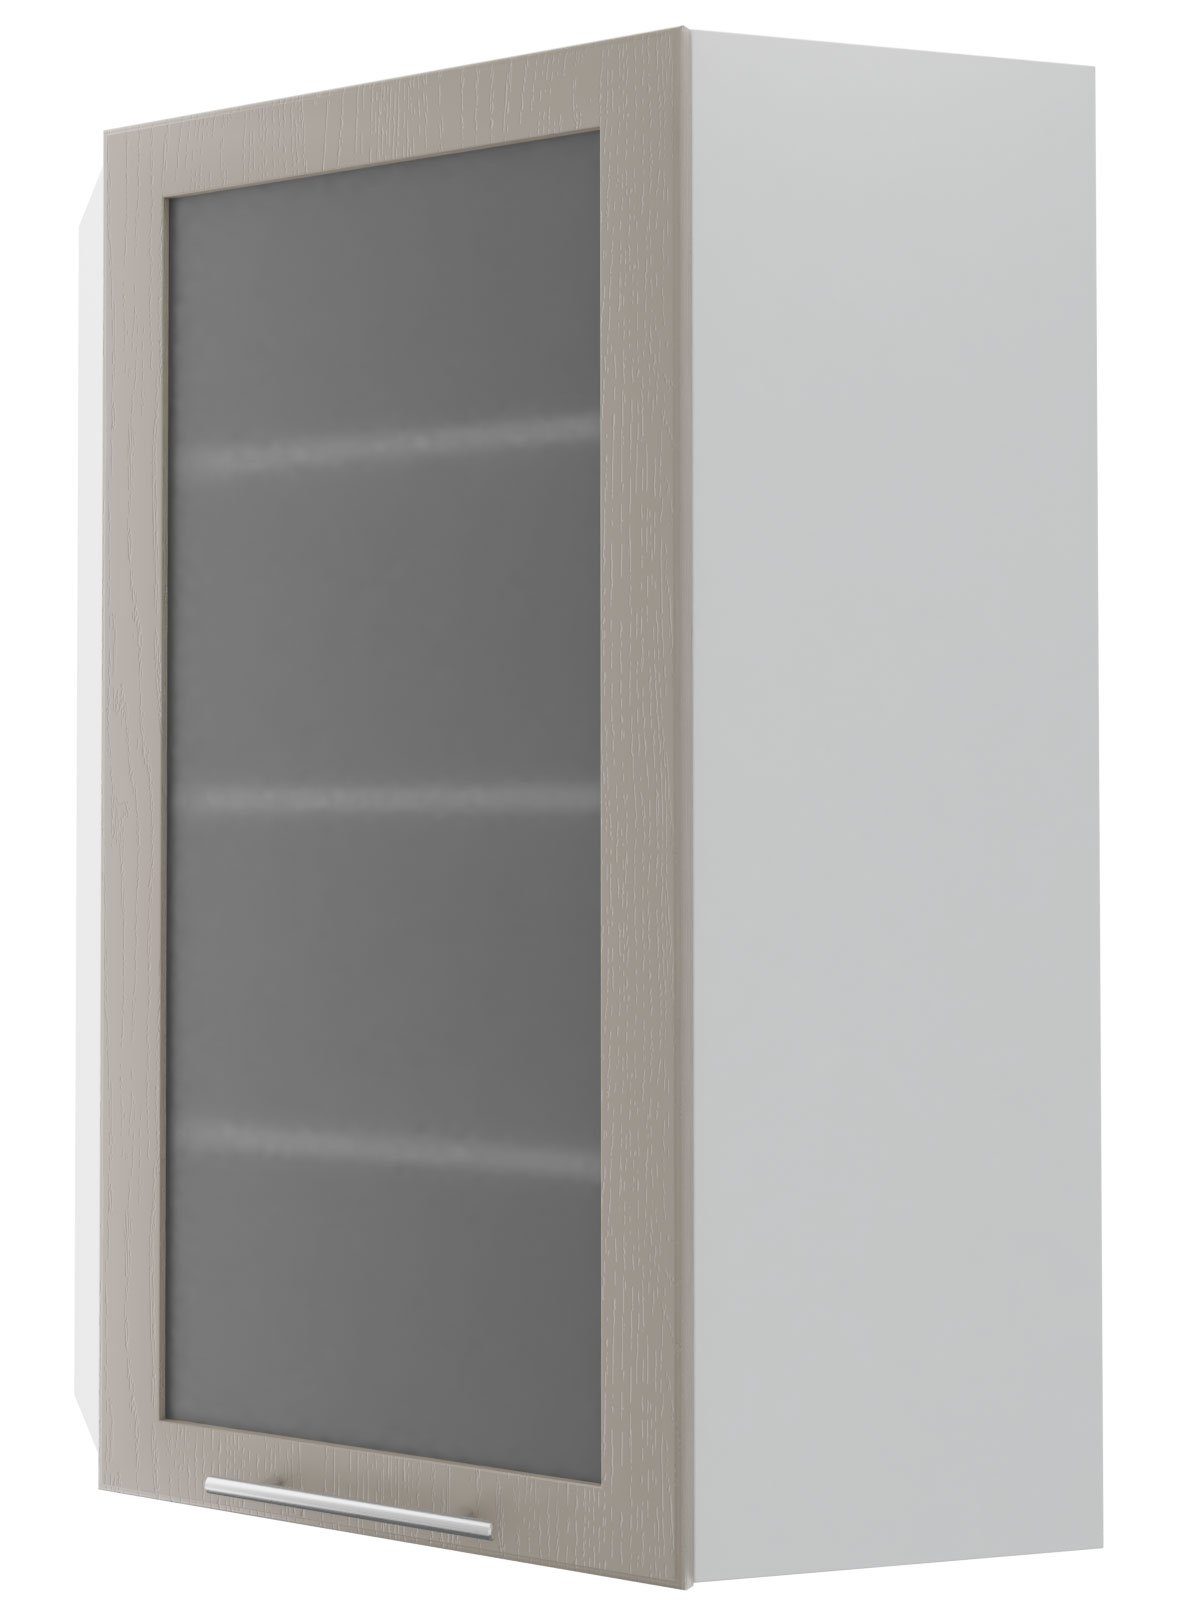 & Feldmann-Wohnen mit Elbing Eckhängeschrank (Elbing) grey Front-, stone 1-türig wählbar Glaseinsatz Korpusfarbe 60cm Ausführung